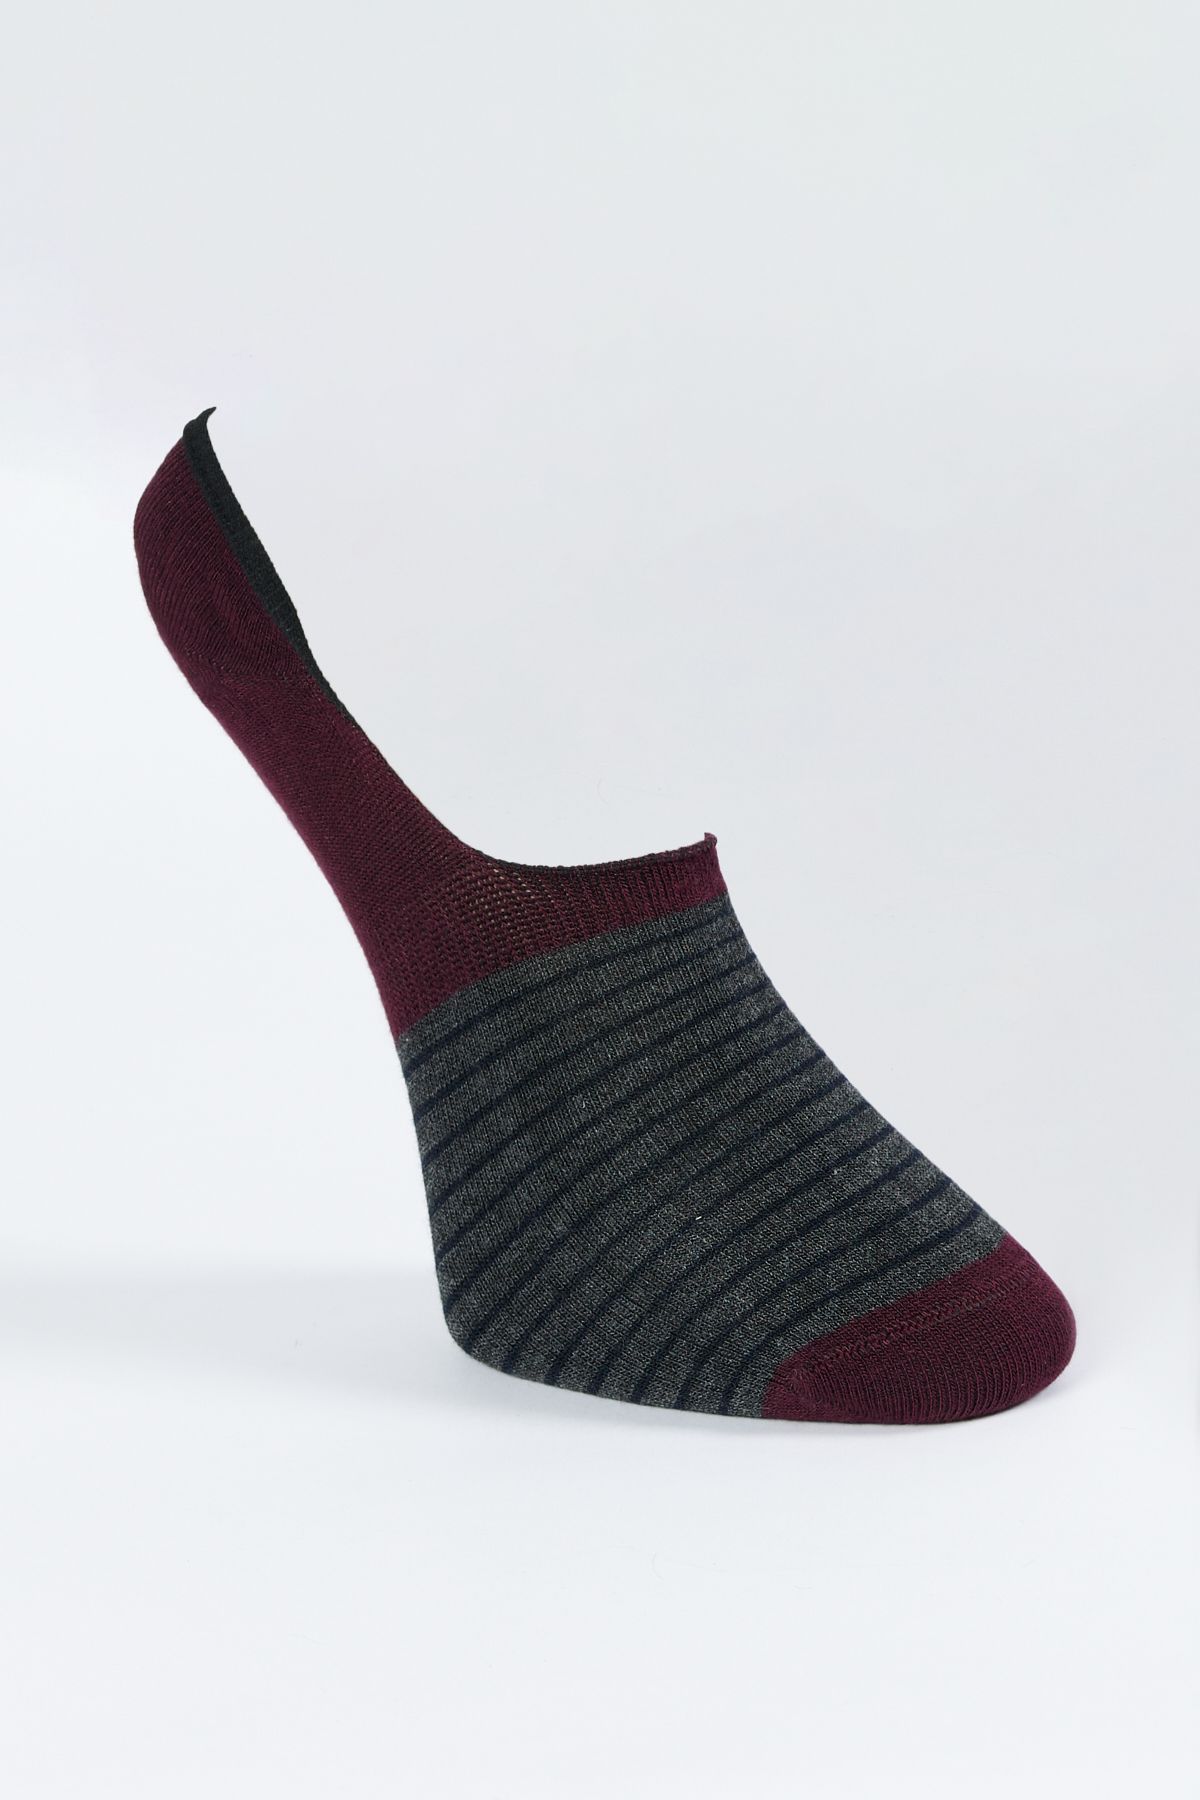 Altınyıldız Classics Erkek Antrasit-Bordo Desenli Tekli Babet Çorap